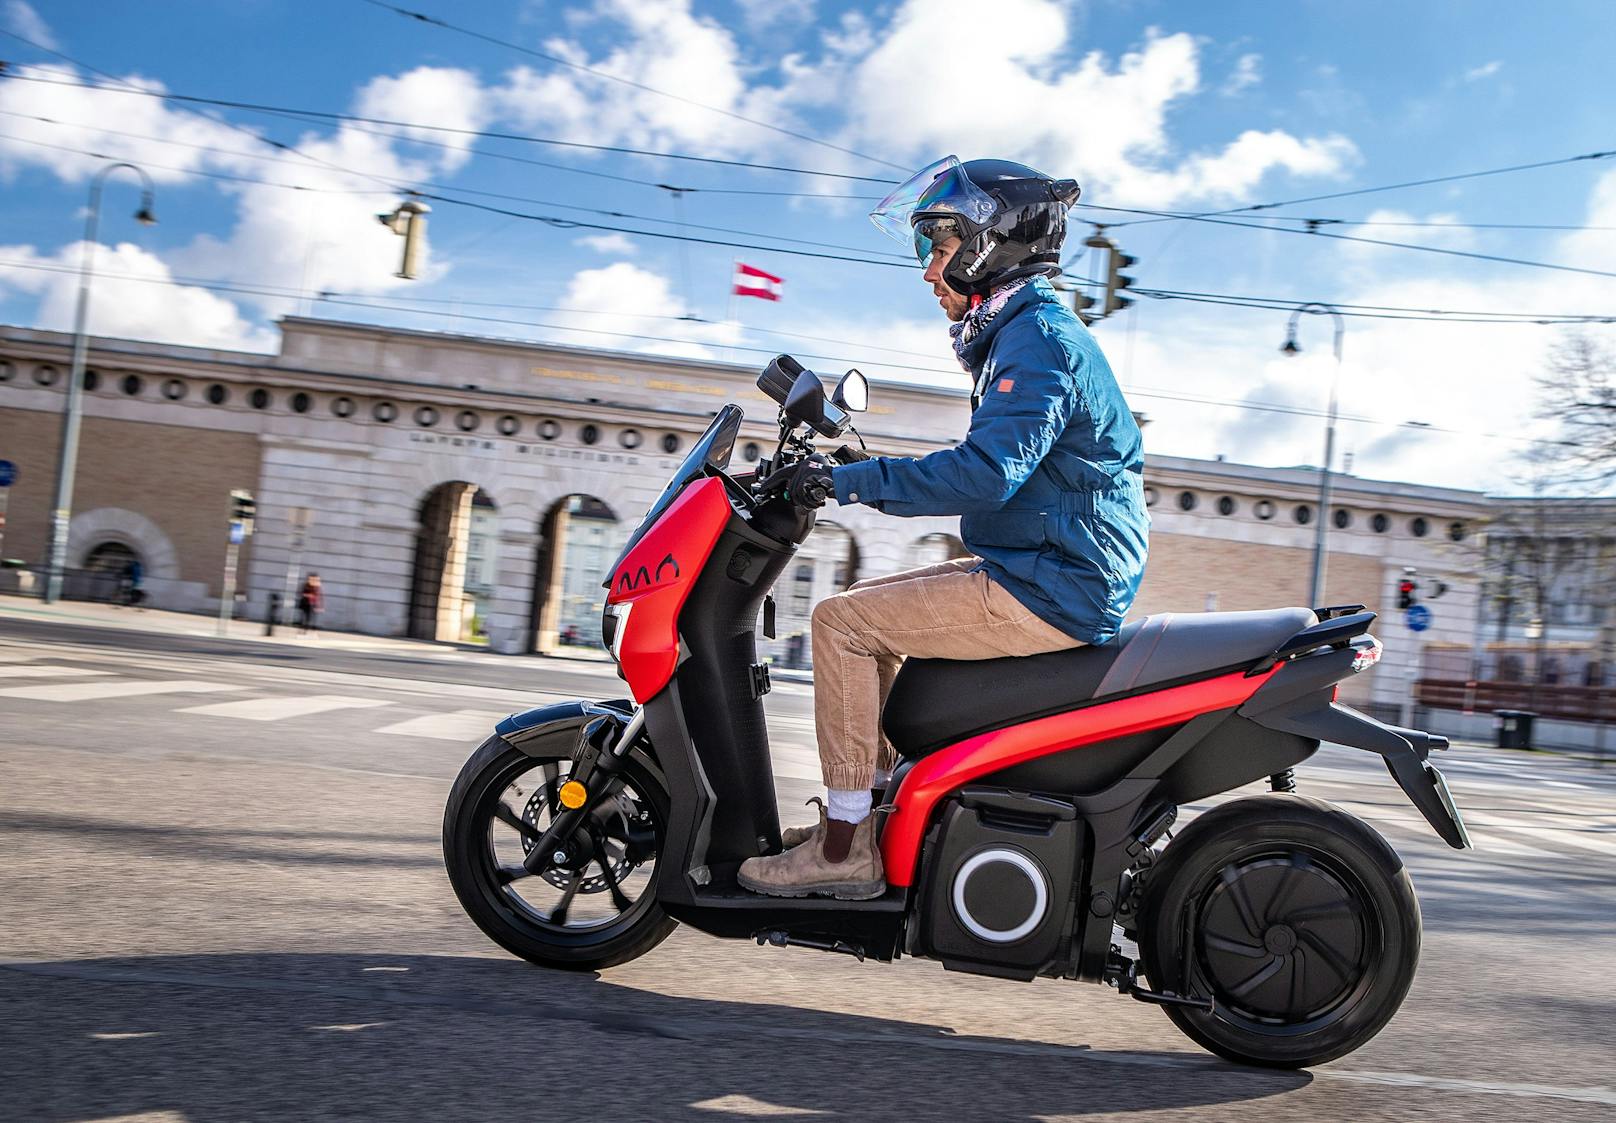 Der SEAT MÓ ist der erste vollelektrische eScooter der 125-Kubik-Klasse. Der 7-kW-Elektromotor sorgt für eine Höchstgeschwindigkeit von 95 km/h und eine Beschleunigung von 3,9 Sekunden von 0 auf 50 km/h.